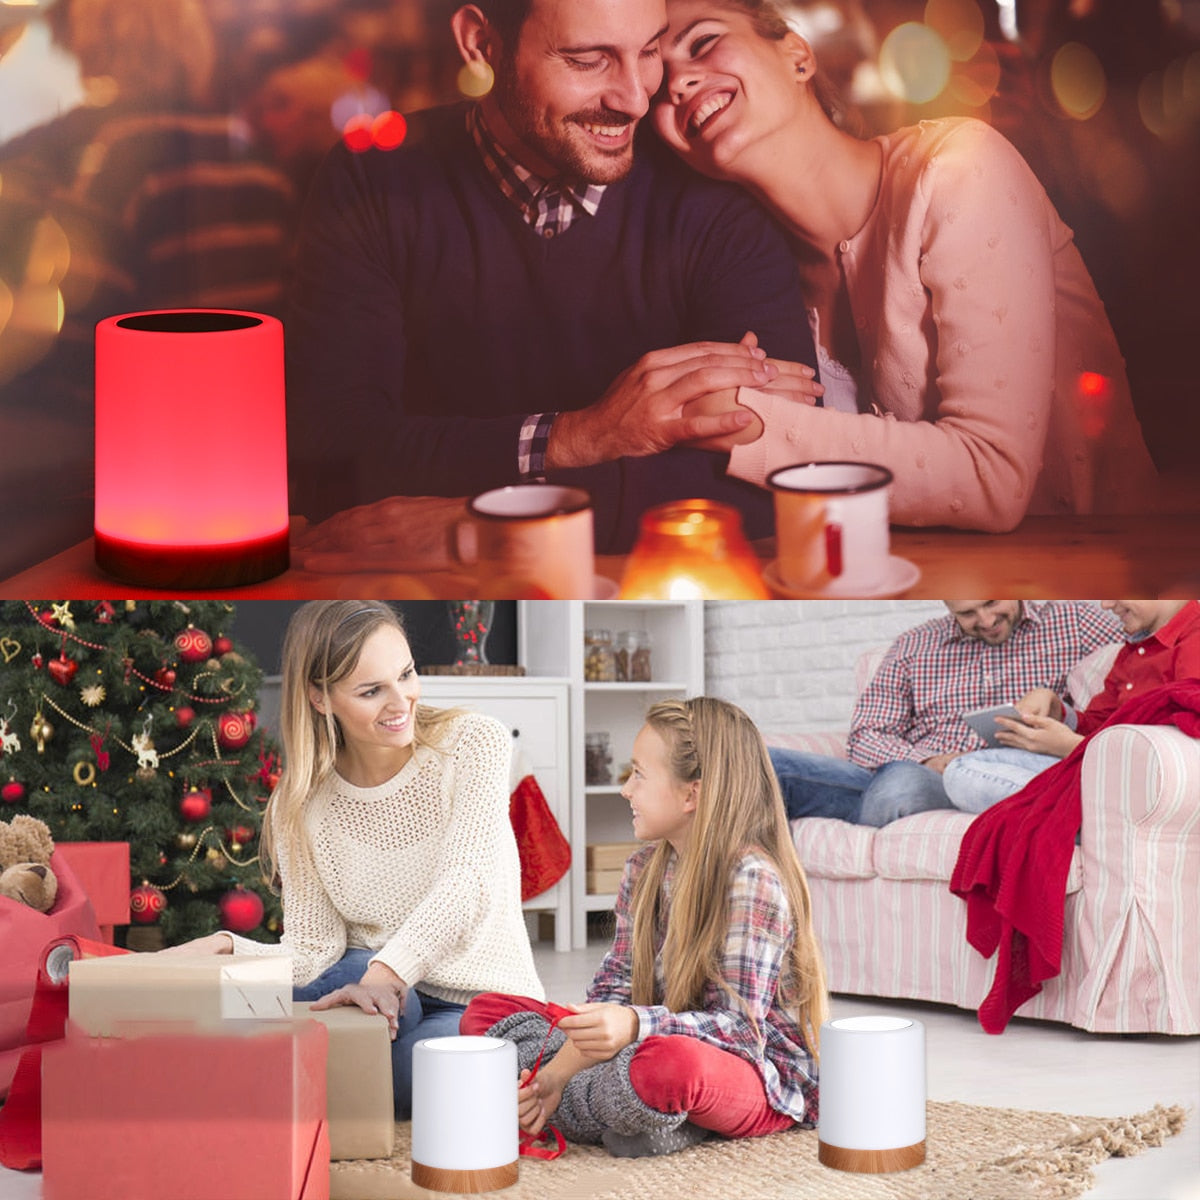 Gezellige nachtlamp bij kerstviering en romantische date